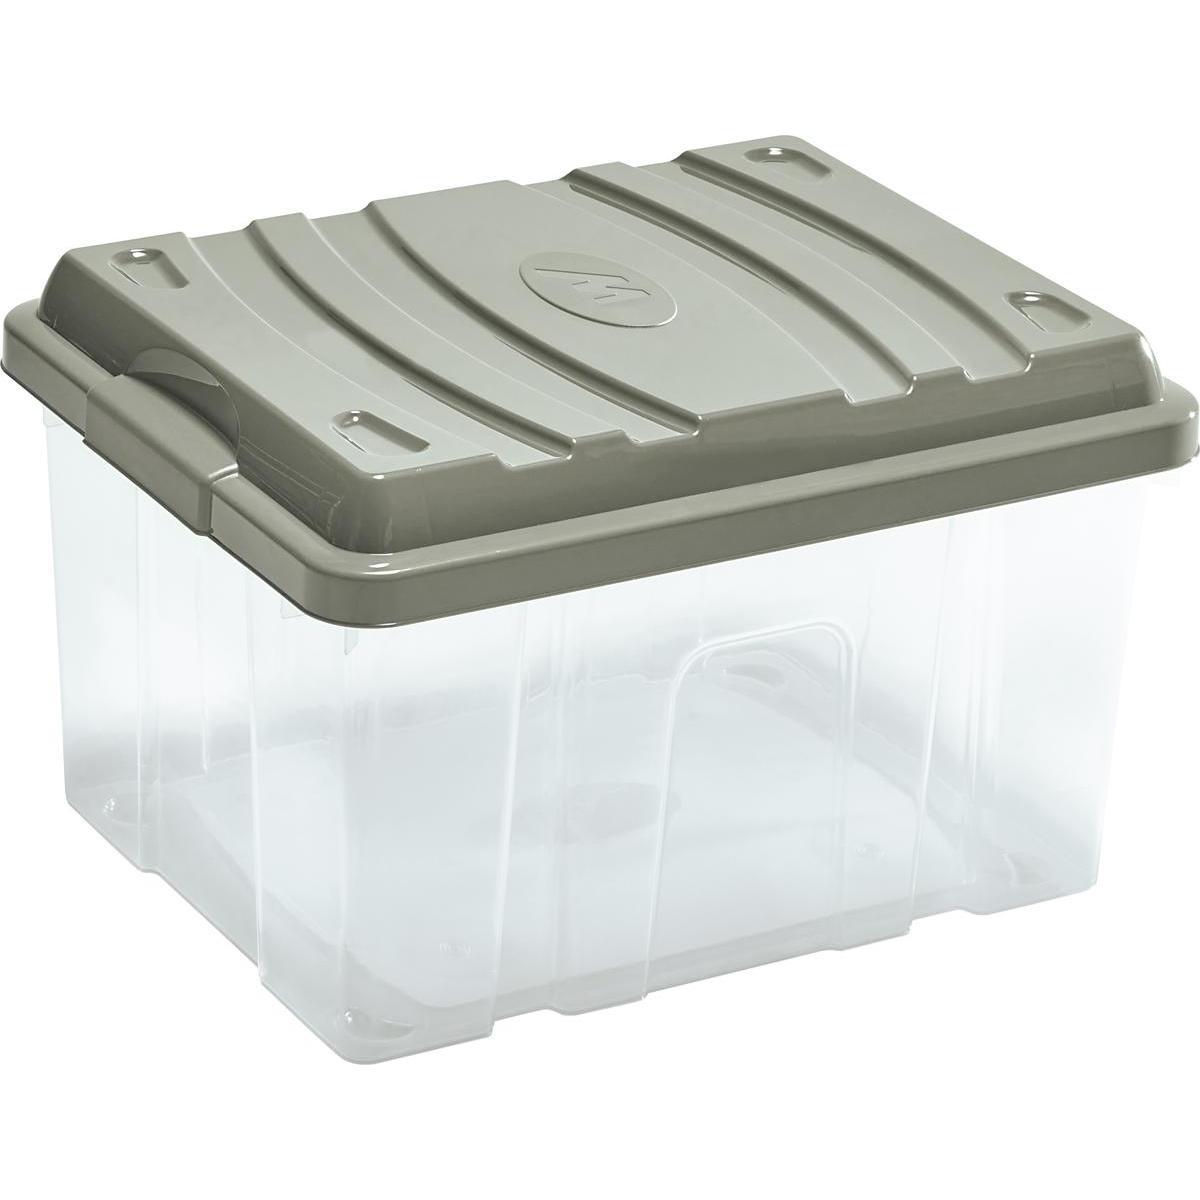 Box de rangement avec couvercle - Plastique - 46 x 37 x H 29 cm - Beige